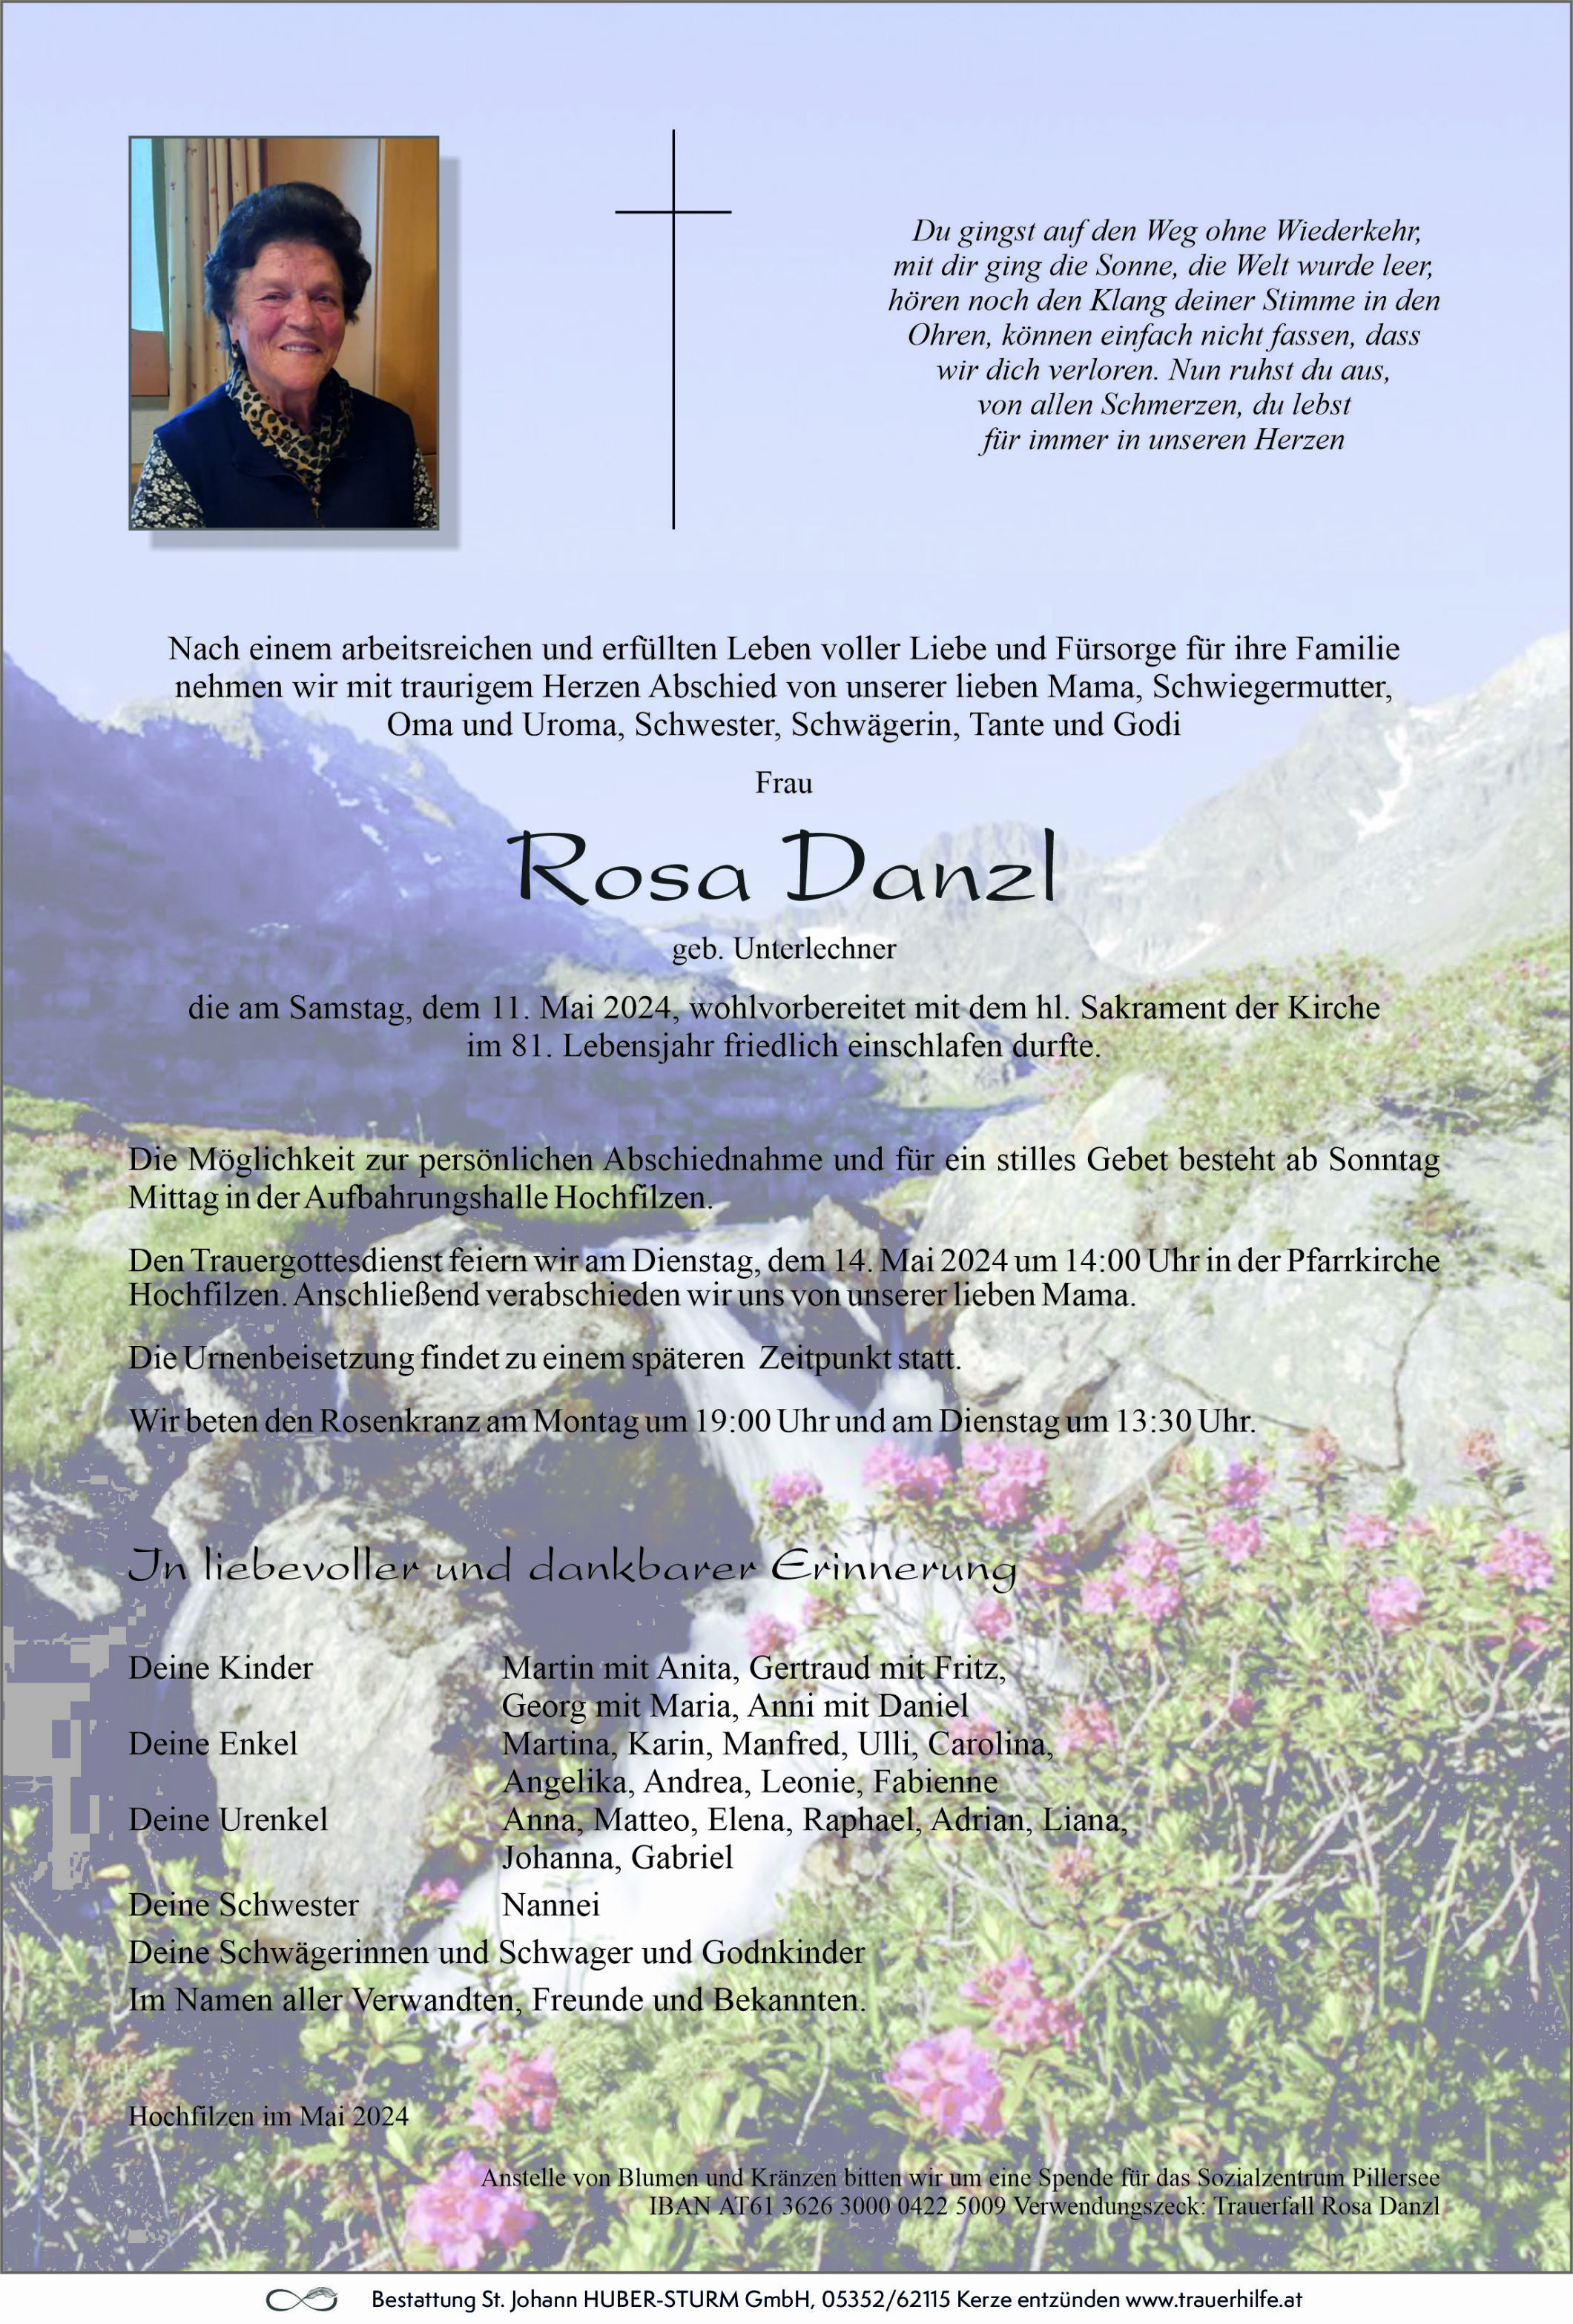 Rosa Danzl